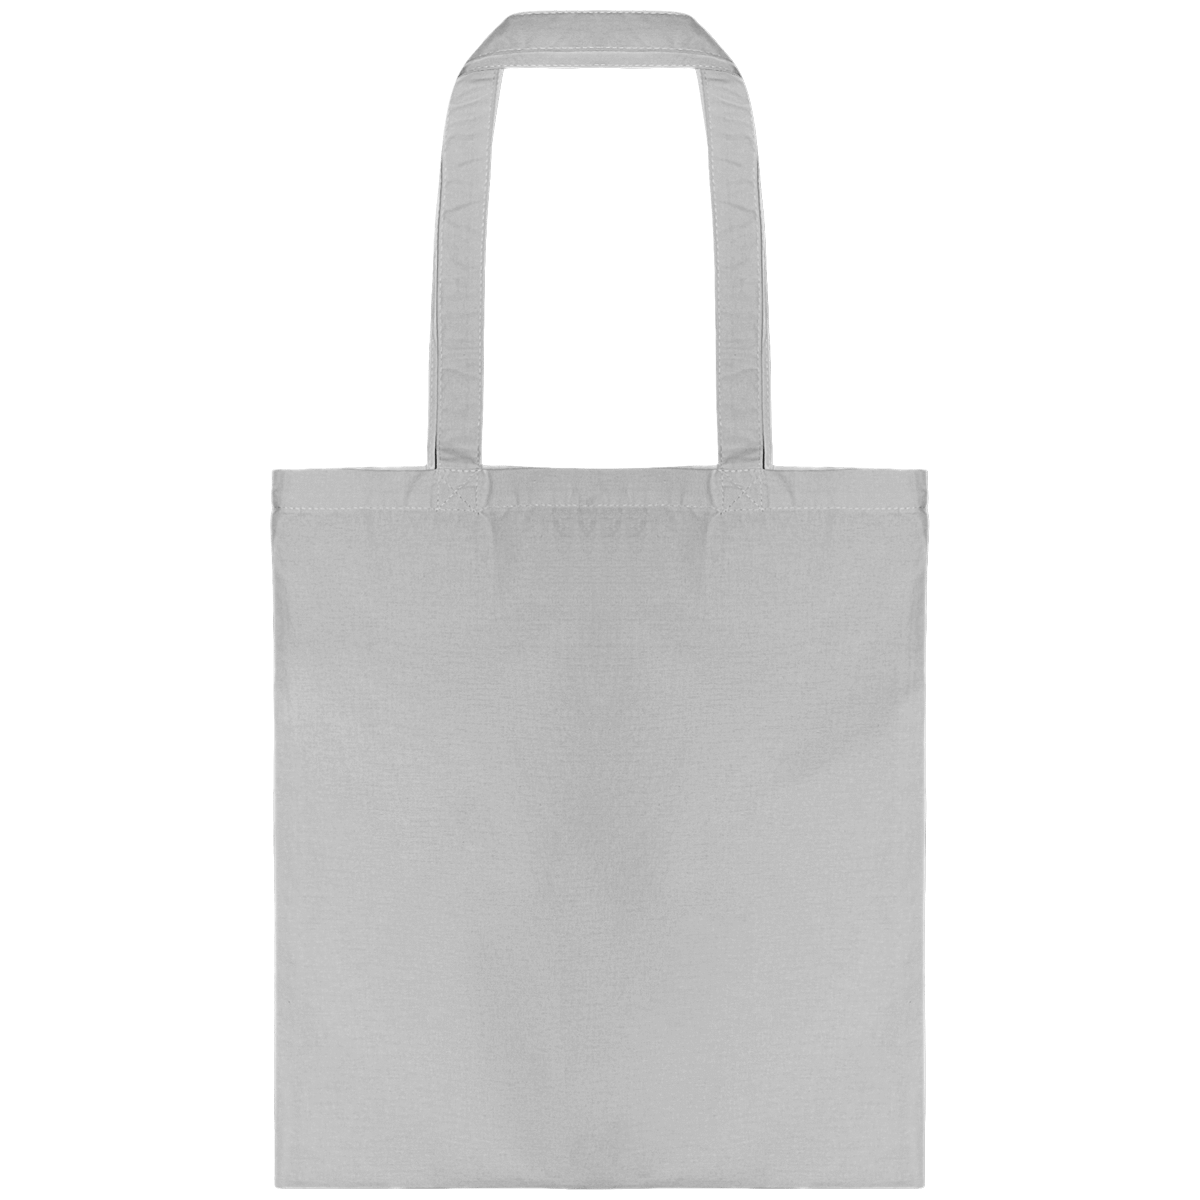 Personnalisez Votre Tote Bag Avec Tunetoo Cool Grey